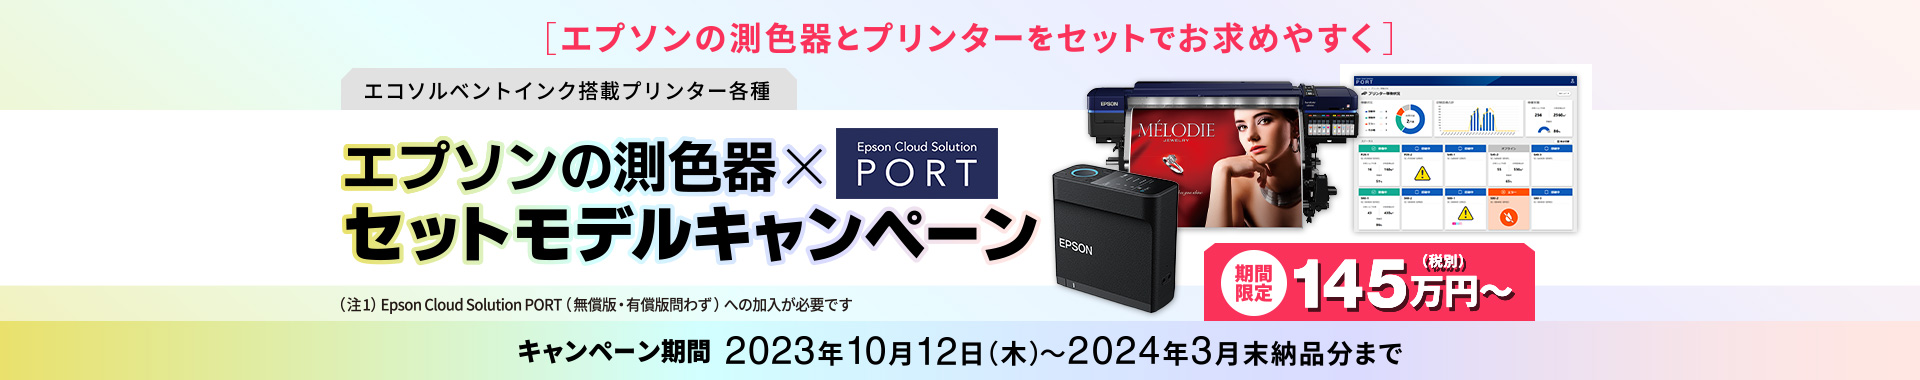 エコソルベントインク搭載プリンター各種 エプソンの測色器×Epson Cloud Solution PORTセットモデルキャンペーンページ